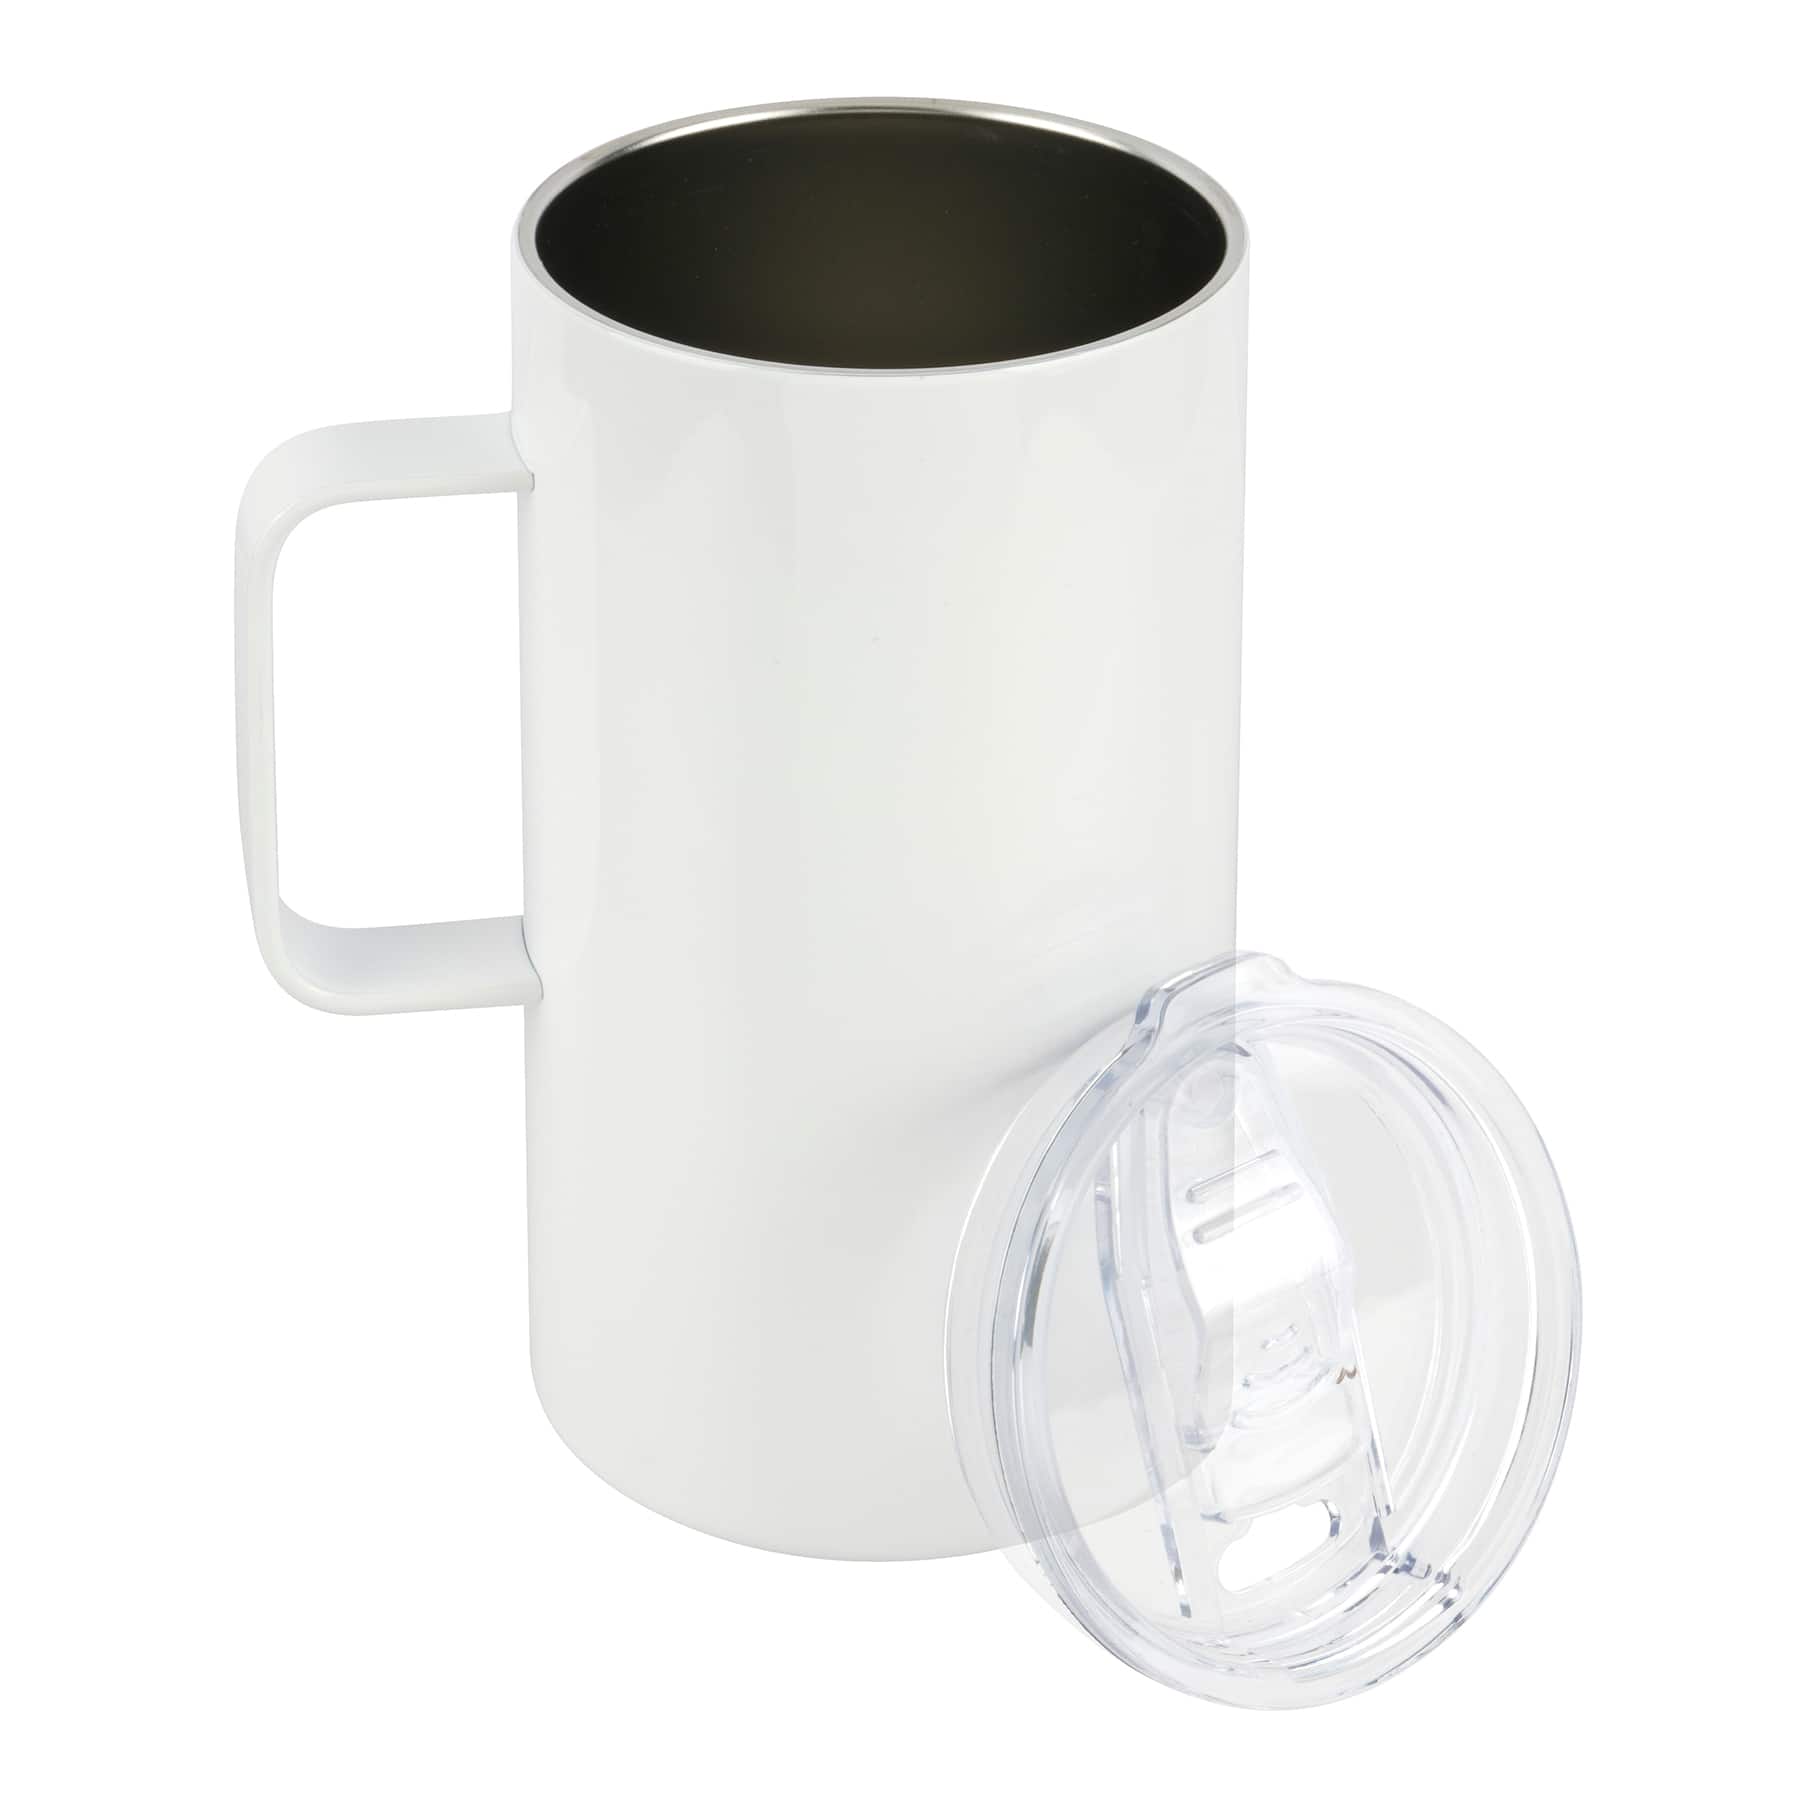 Custom 20 oz Stainless Steel Mug, Personalized Photo Mug